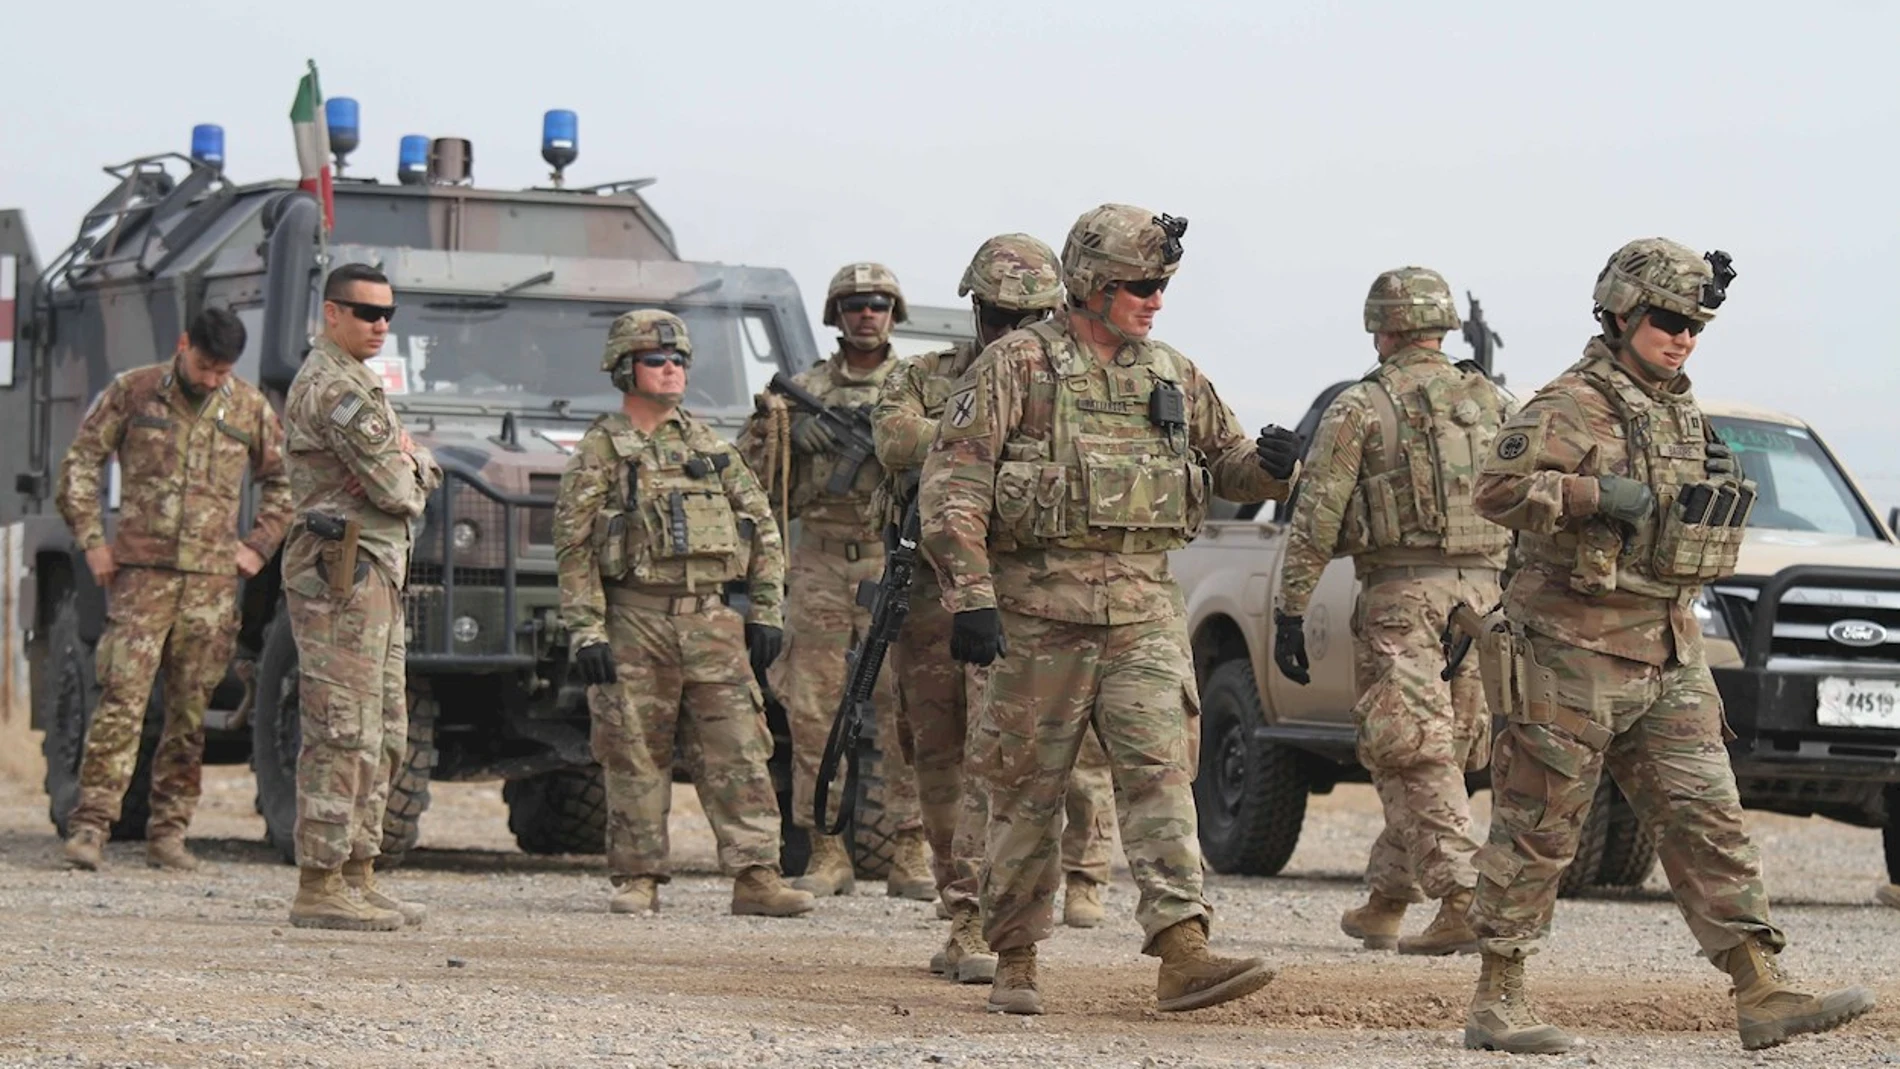 Vista de soldados estadounidenses en labores de seguridad en Afganistán